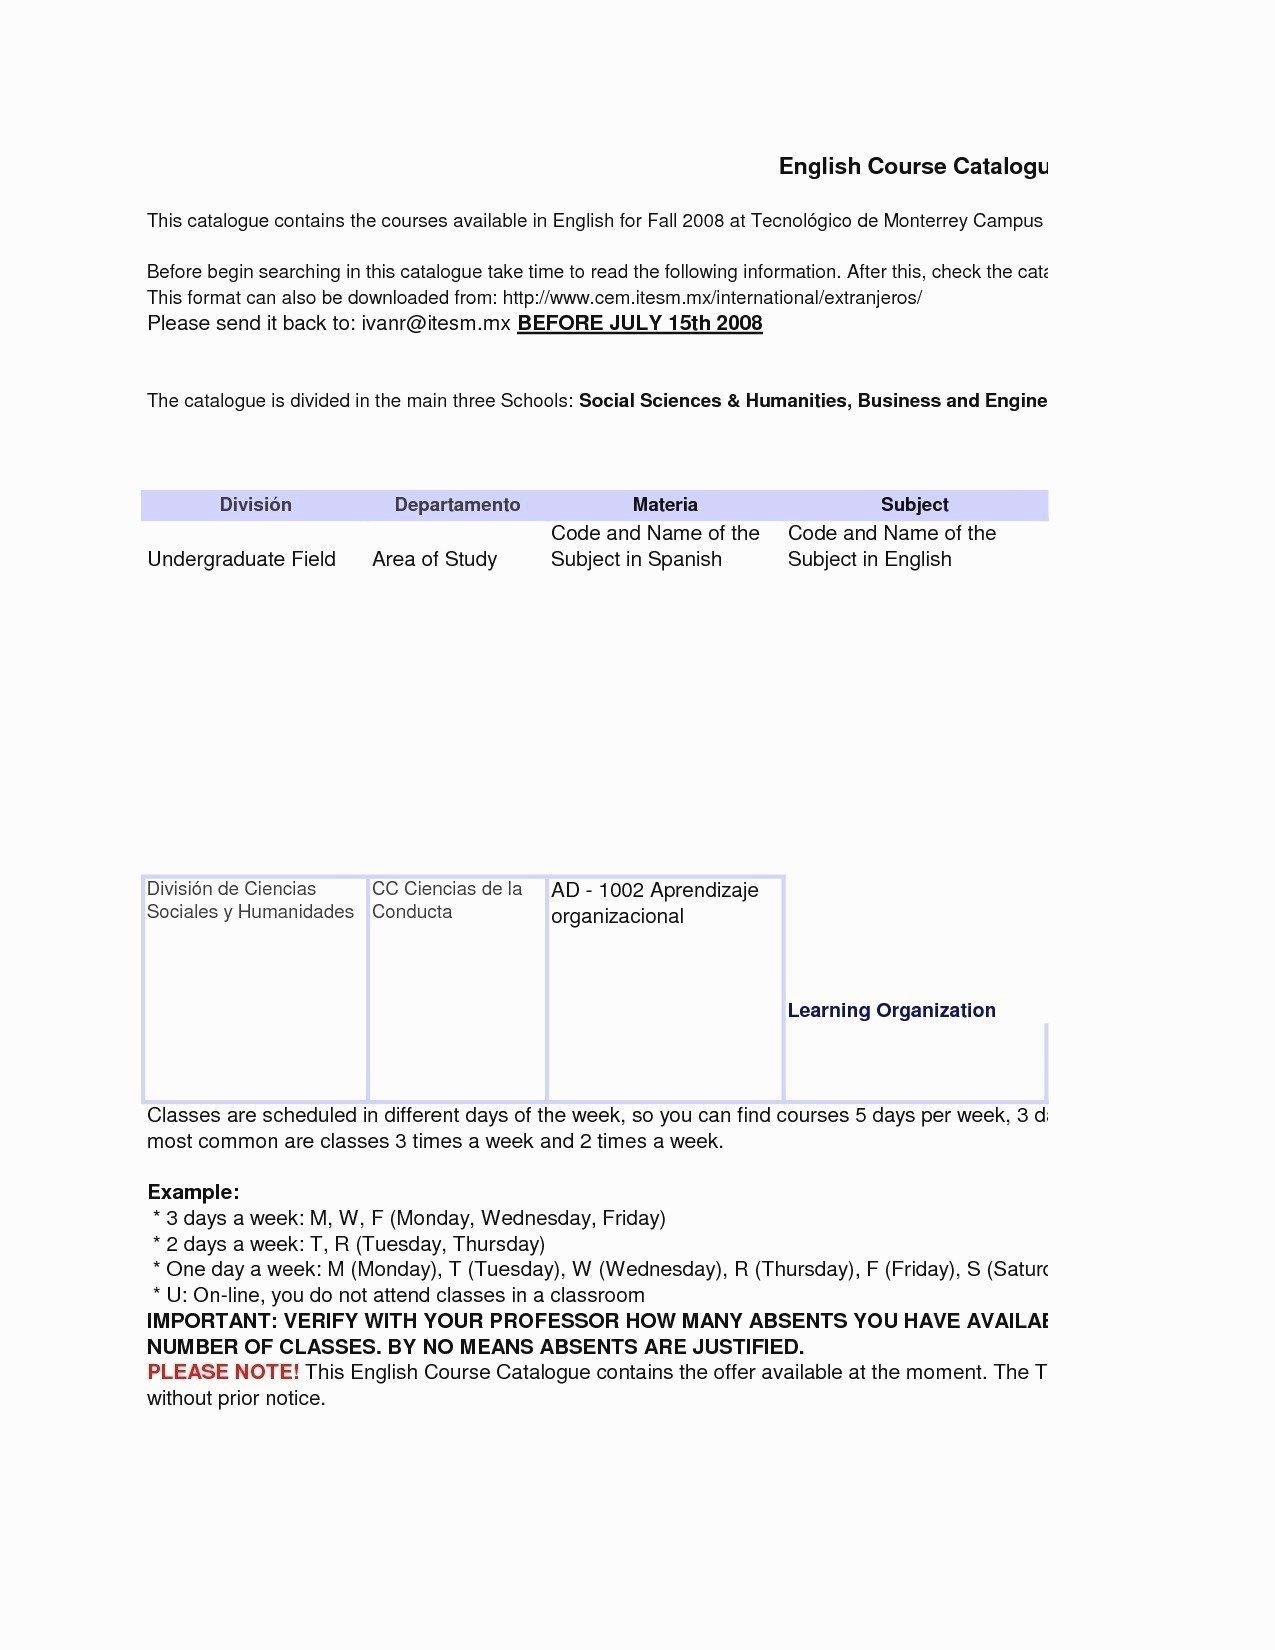 Letter format Carbon Copy Luxury Professional Letter format Enclosure Cc New Business